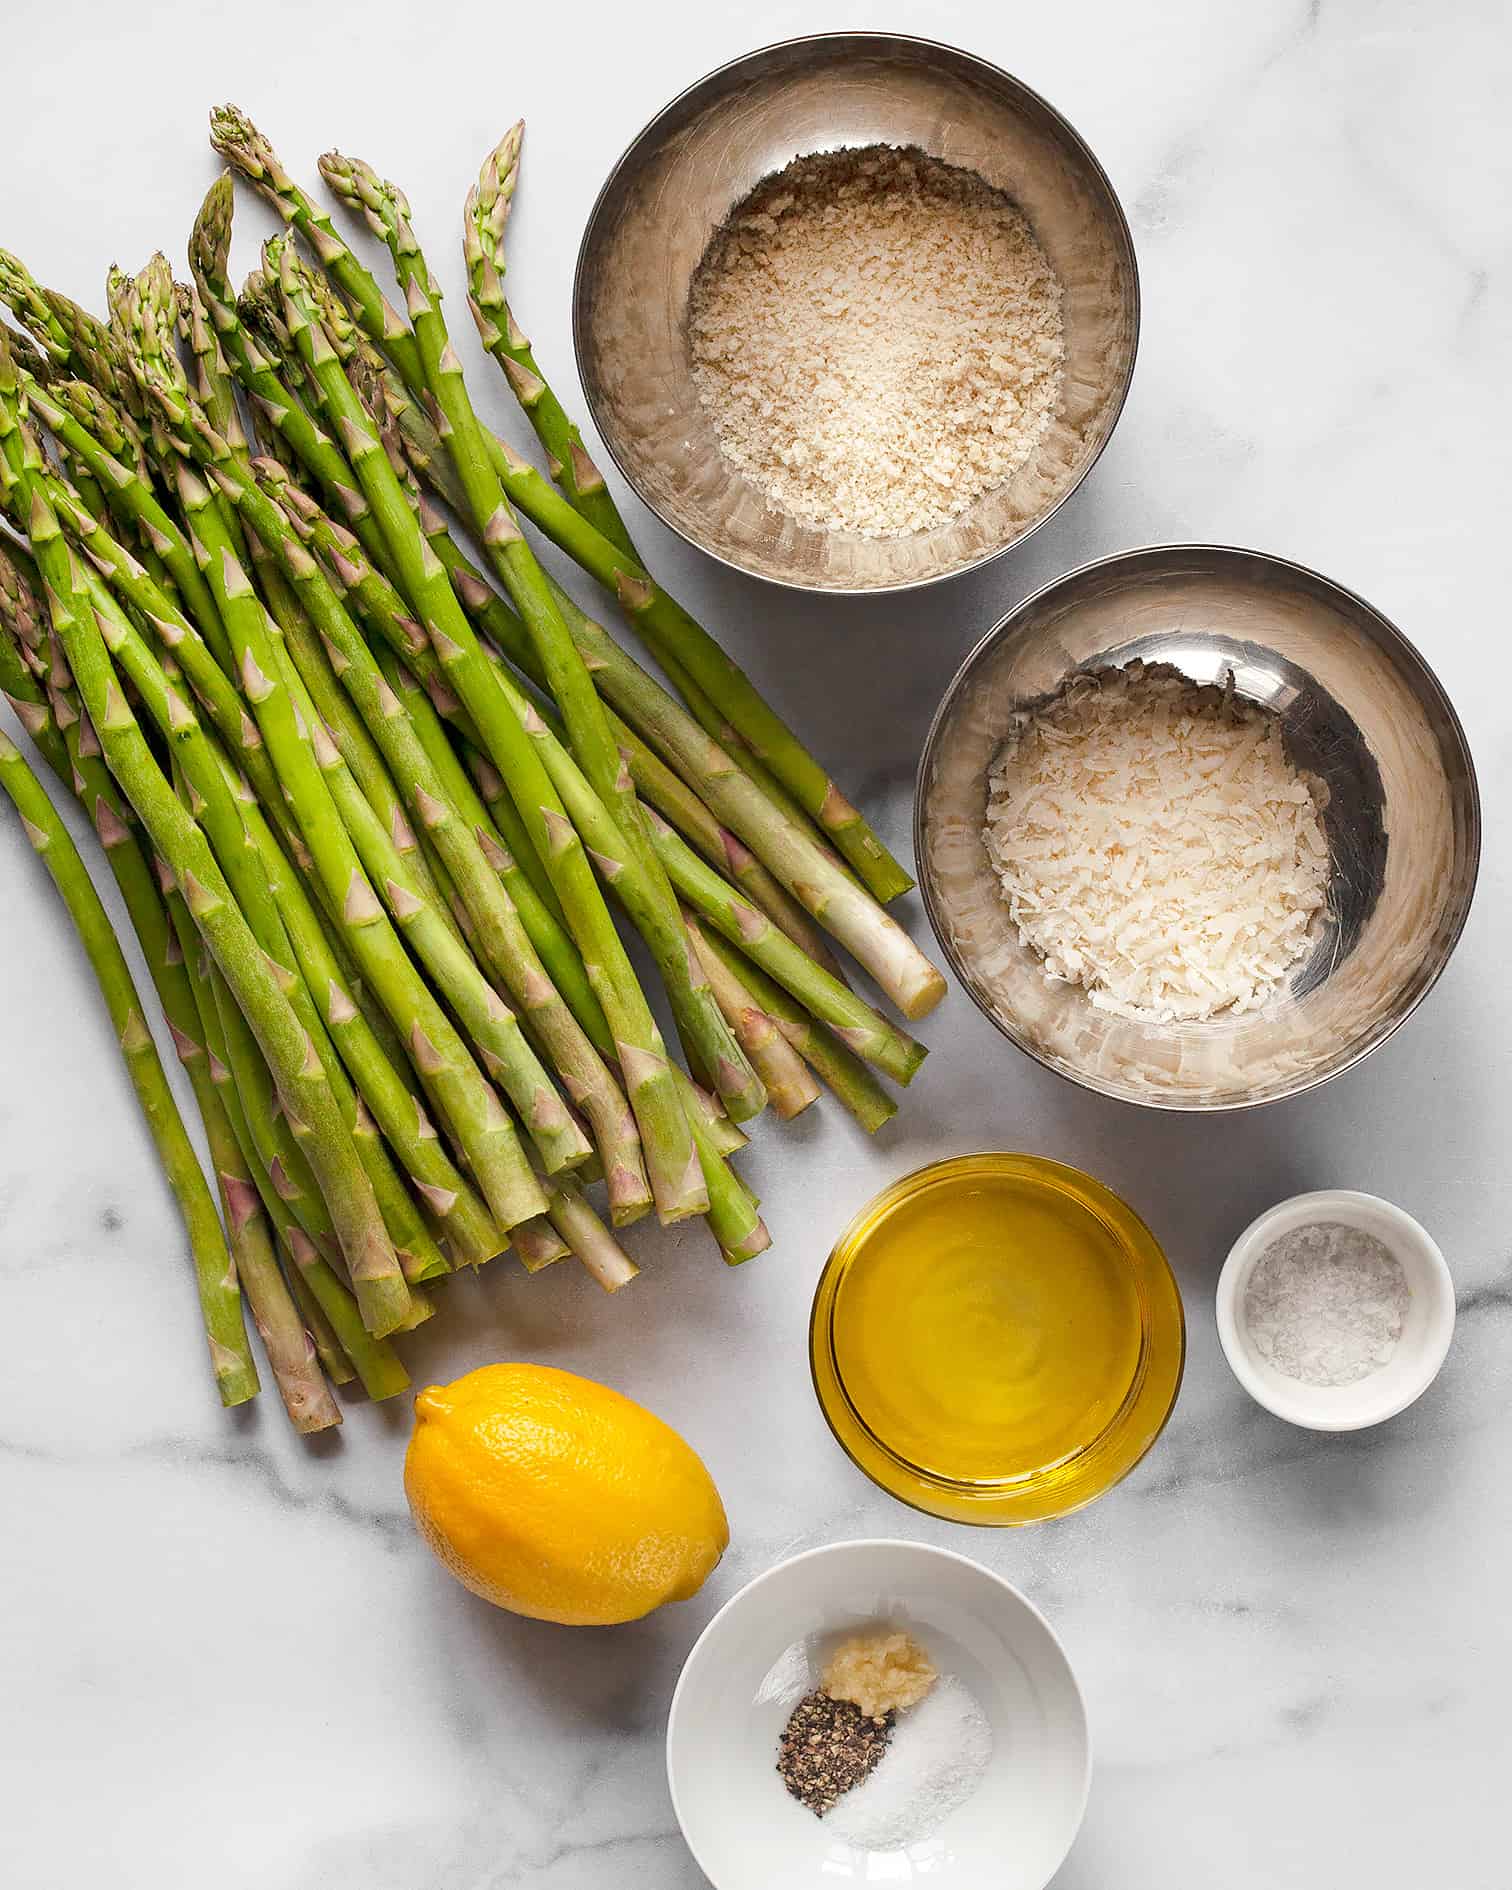 Ingredients including asparagus, lemon, garlic and panko breadcrumbs